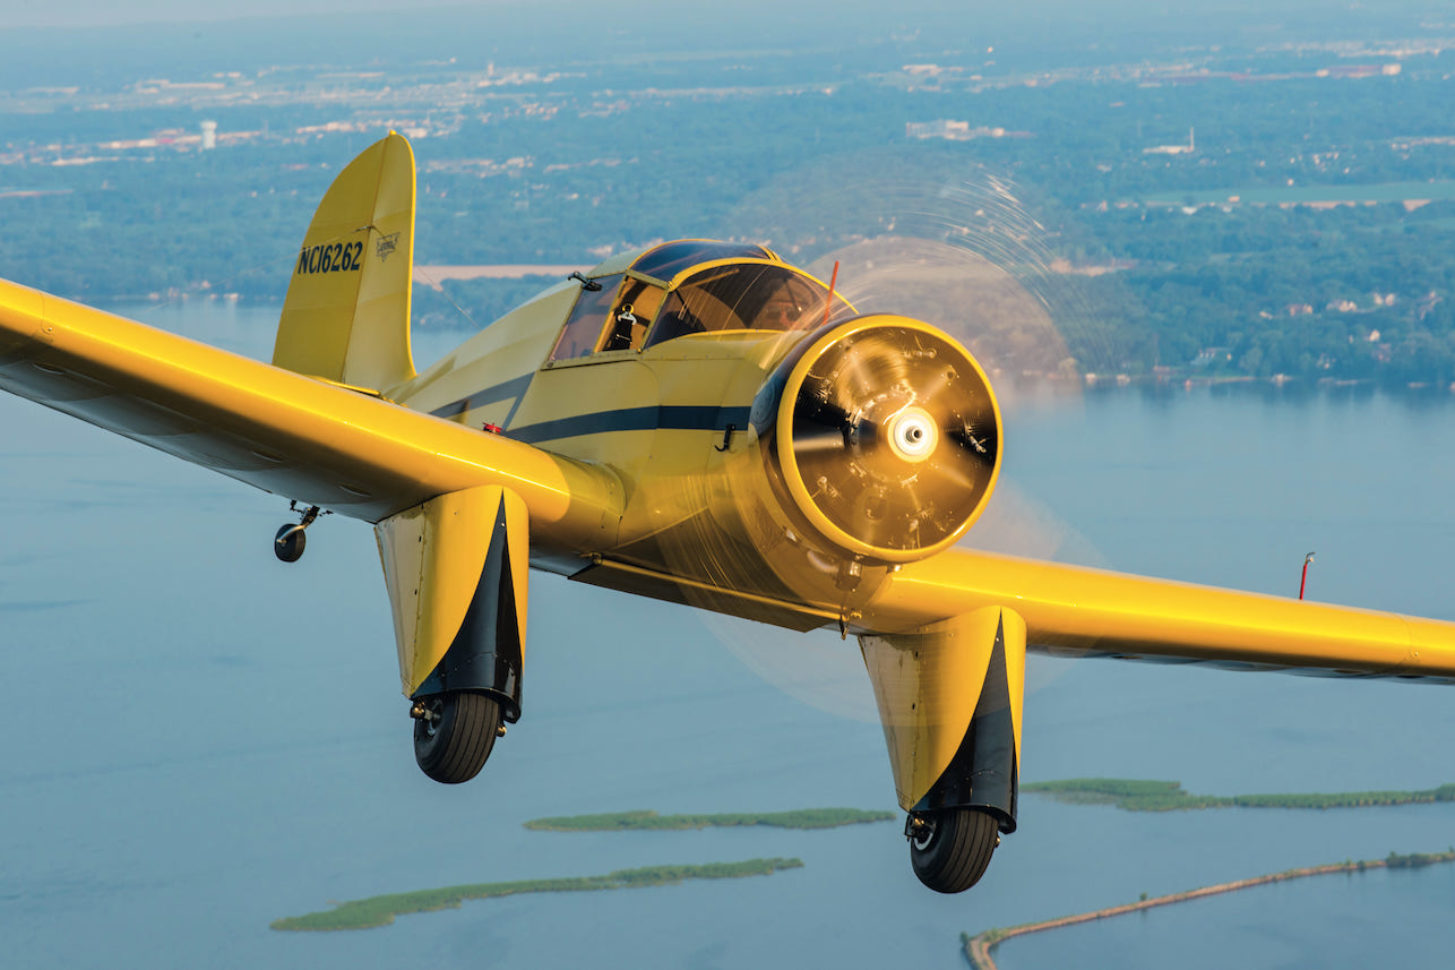 Aufwendige Restauration: Diese Aeronca LB fliegt nach 57 Jahren wieder